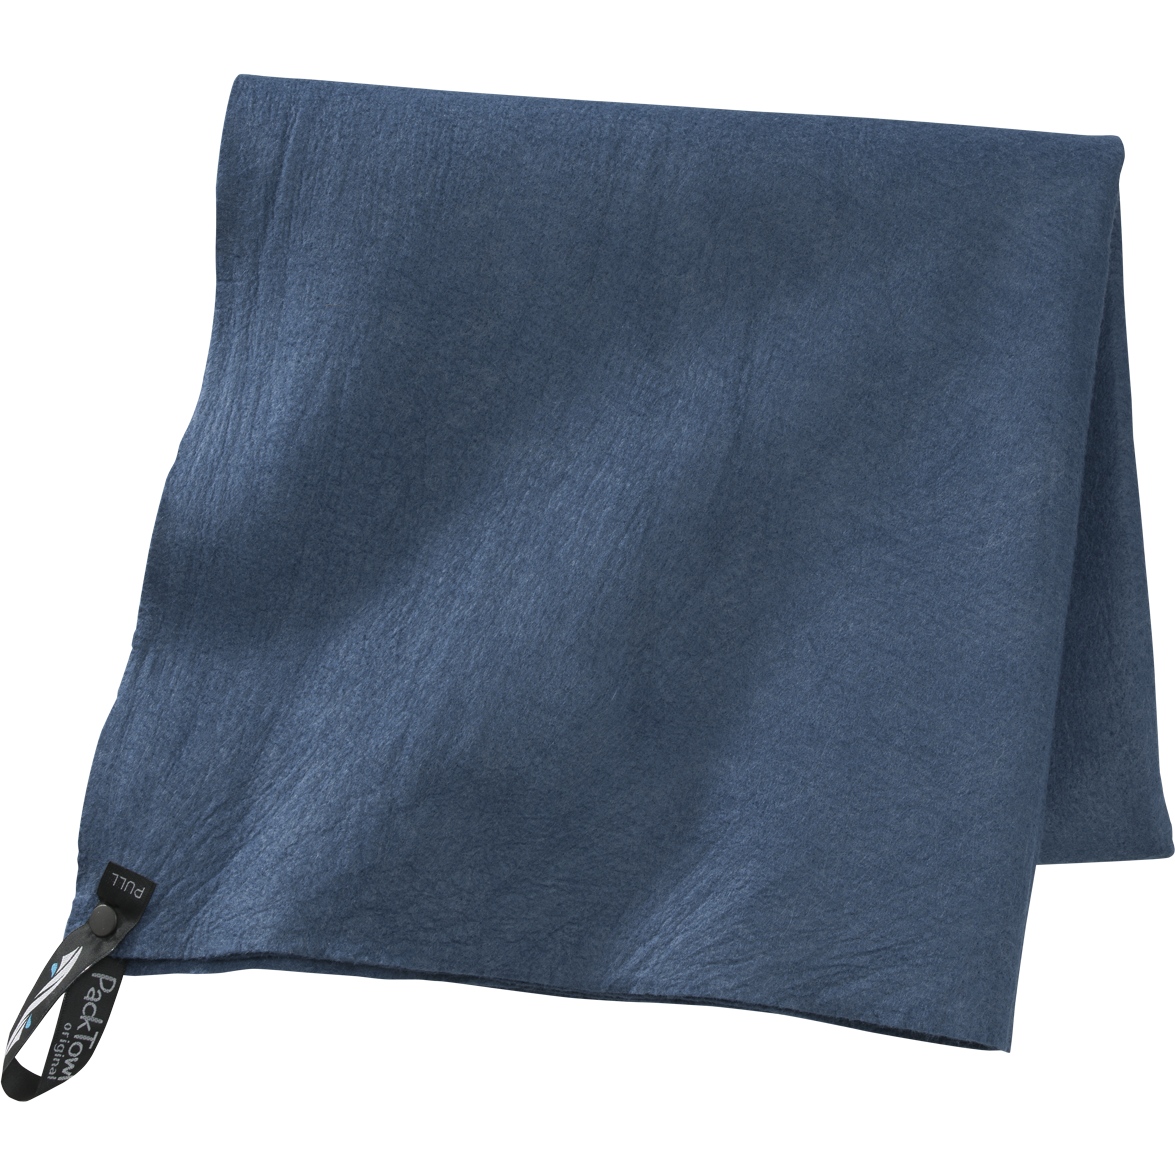 Productfoto van PackTowl Original L Handdoek - blauw